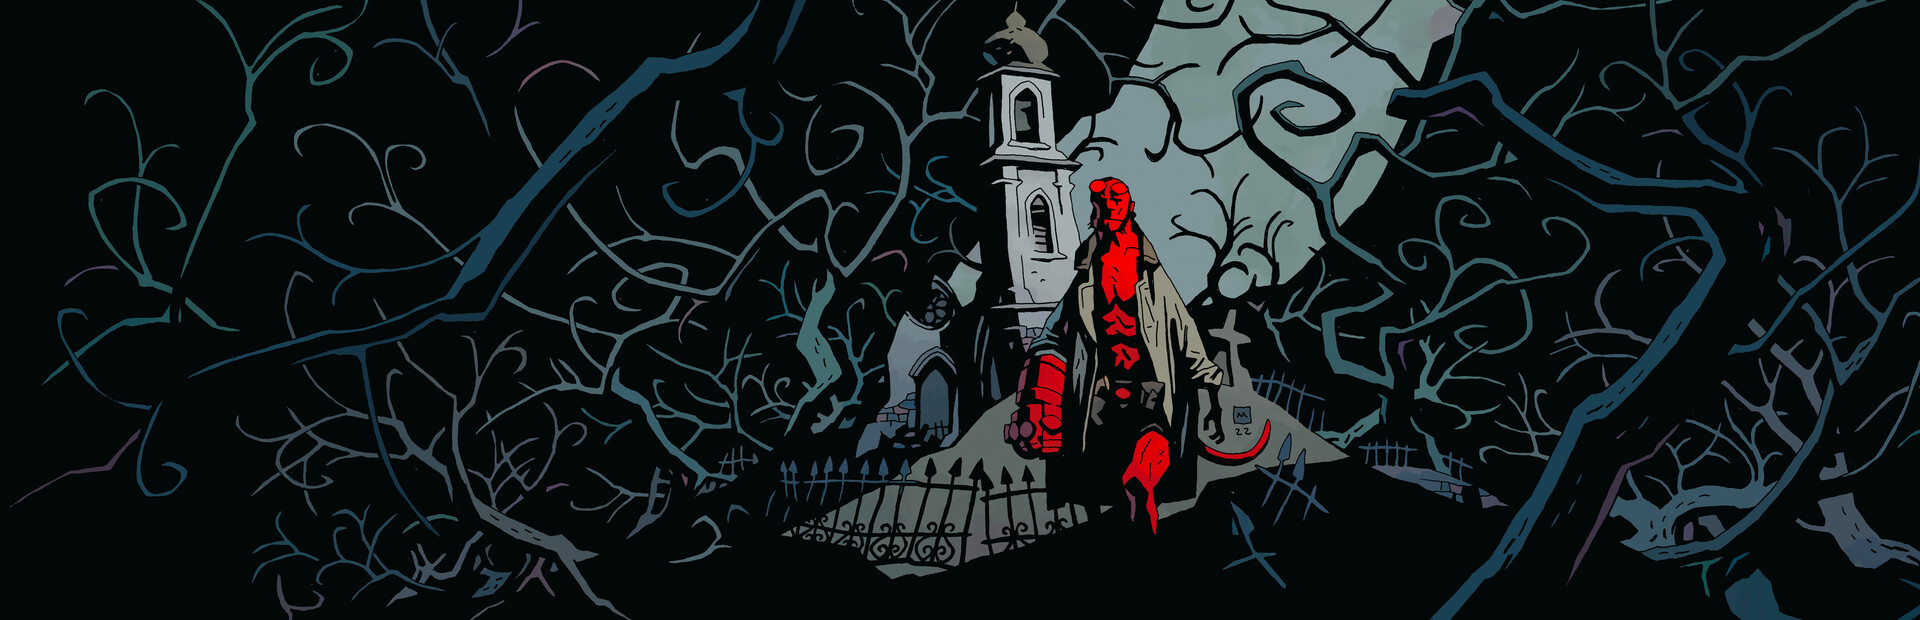 Hellboy Web of Wyrd cover image